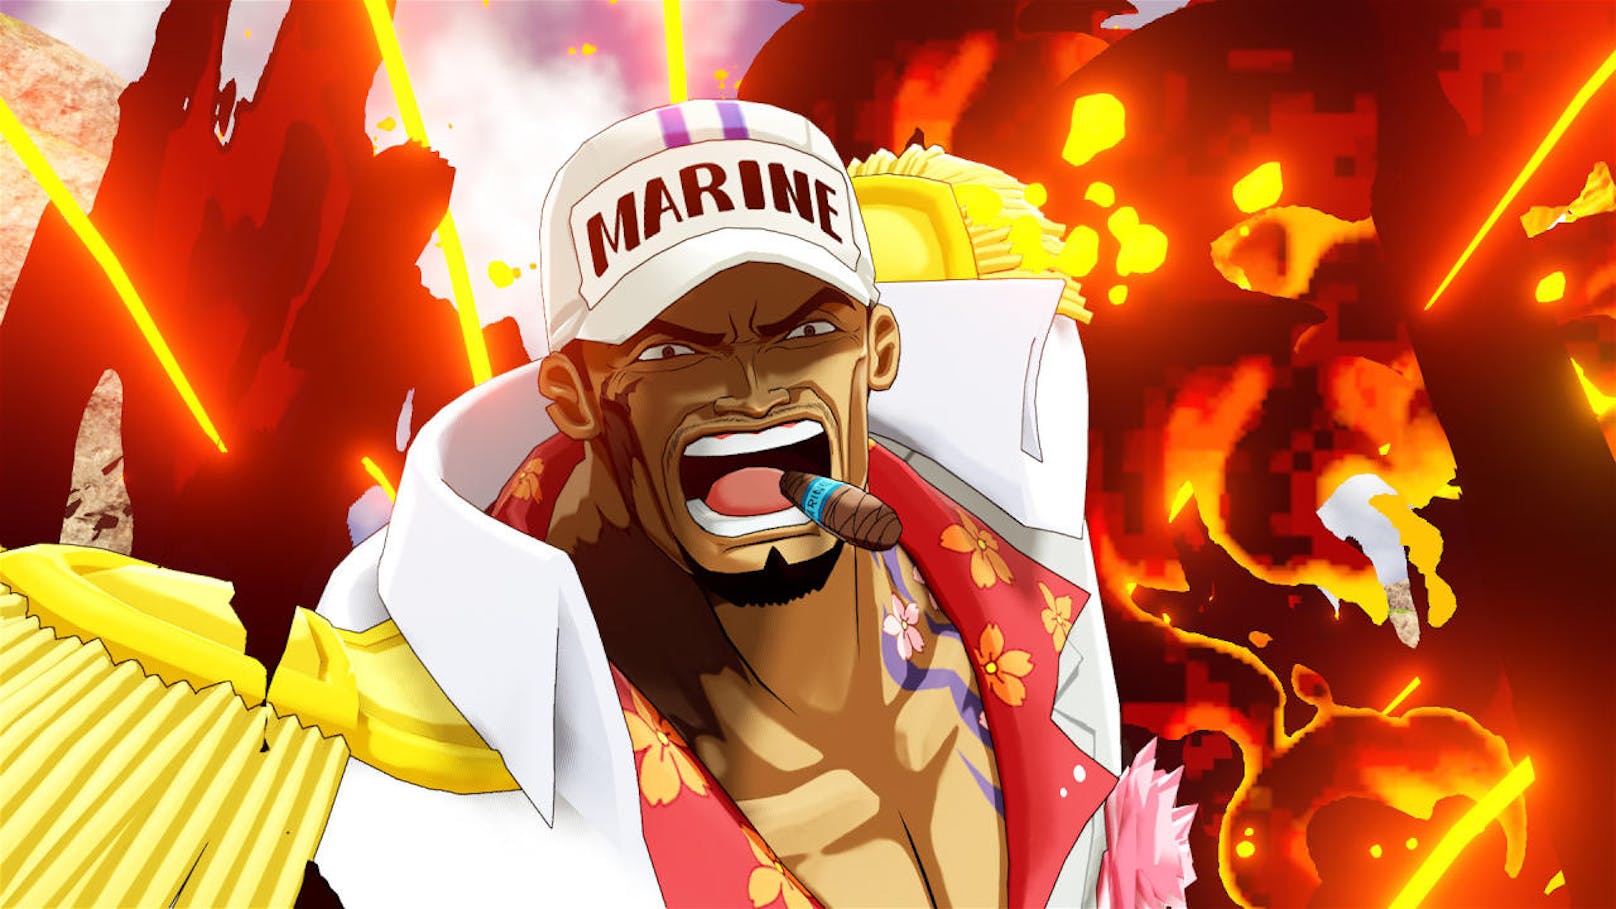 Bandai Namco Entertainment Europe kündigt drei neue Charaktere für One Piece World Seeker an: Sakazuki (Akainu), Kuzan (Aokiji) und Sir Crocodile. Sakazuki (Akainu), Admiral der Marine, ist der Besitzer der Magma-Frucht (Magu Magu no Mi). Mit ihrer Hilfe kann er sich in Magma verwandeln und so alles niederbrennen. Der ehemalige Admiral Kuzan (Aokiji) besitzt die Gefrier-Frucht (Hie Hie no Mi) und kann augenblicklich sich selbst und seine Umgebung einfrieren. Sir Crocodile, ehemaliger Samurai der Meere (Shichibukai), benutzt die Sand-Frucht (Suna Suna no Mi). Sie gibt ihm ihm die Fähigkeit, selbst zu Sand zu werden und diesen zu kontrollieren. One Piece World Seeker ist ab 2018 für PlayStation 4, Xbox One und PC verfügbar.